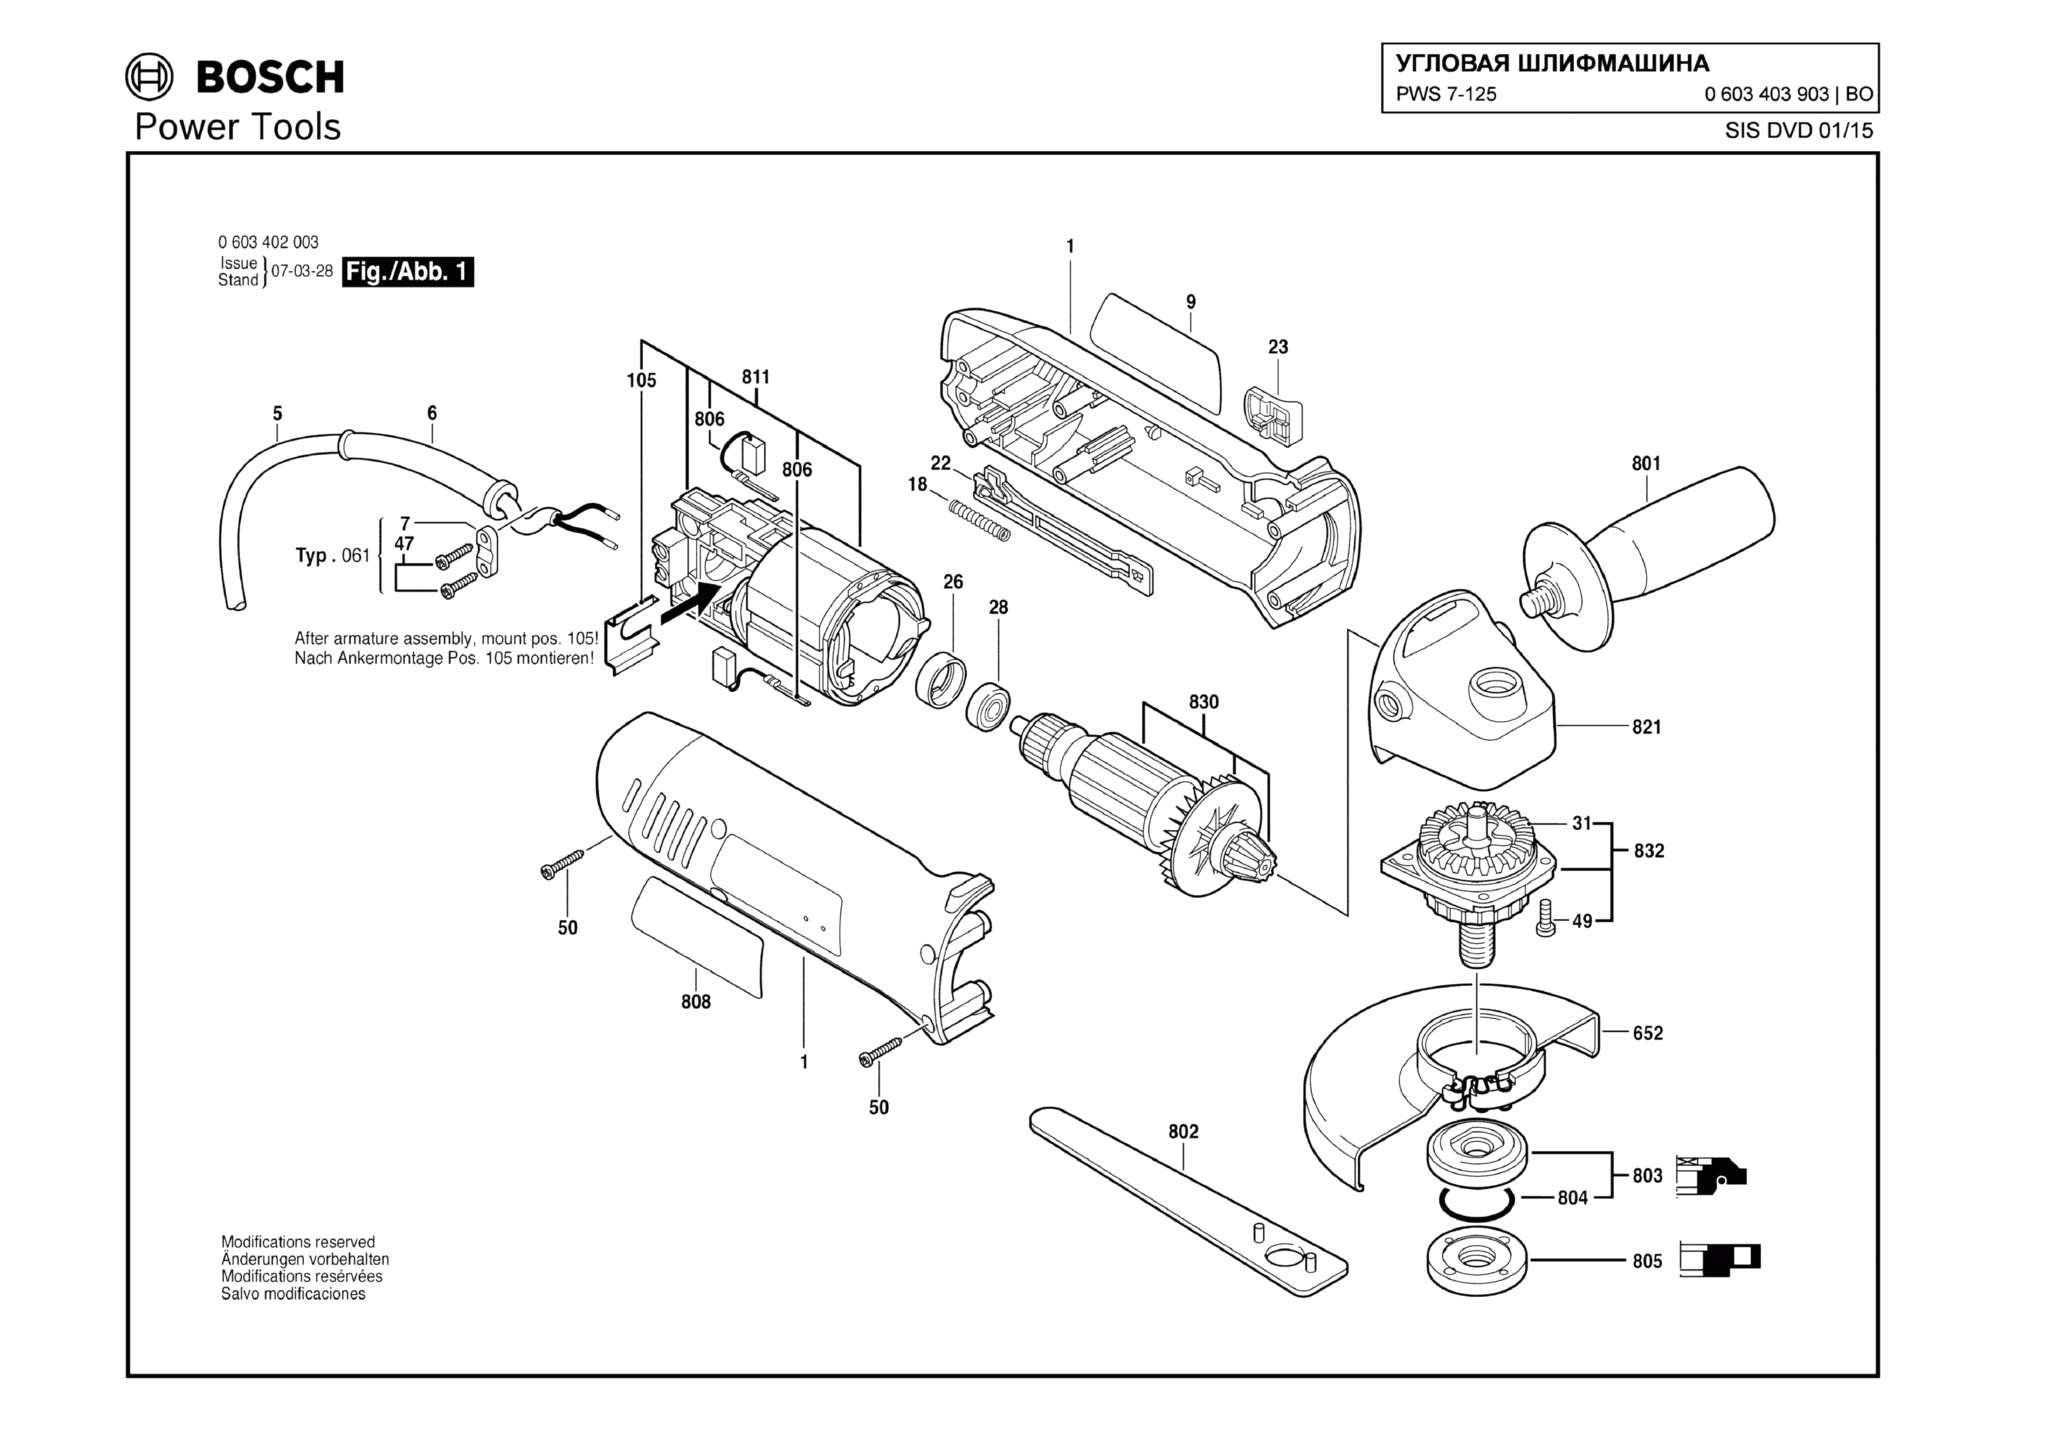 Запчасти, схема и деталировка Bosch PWS 7-125 (ТИП 0603403903)